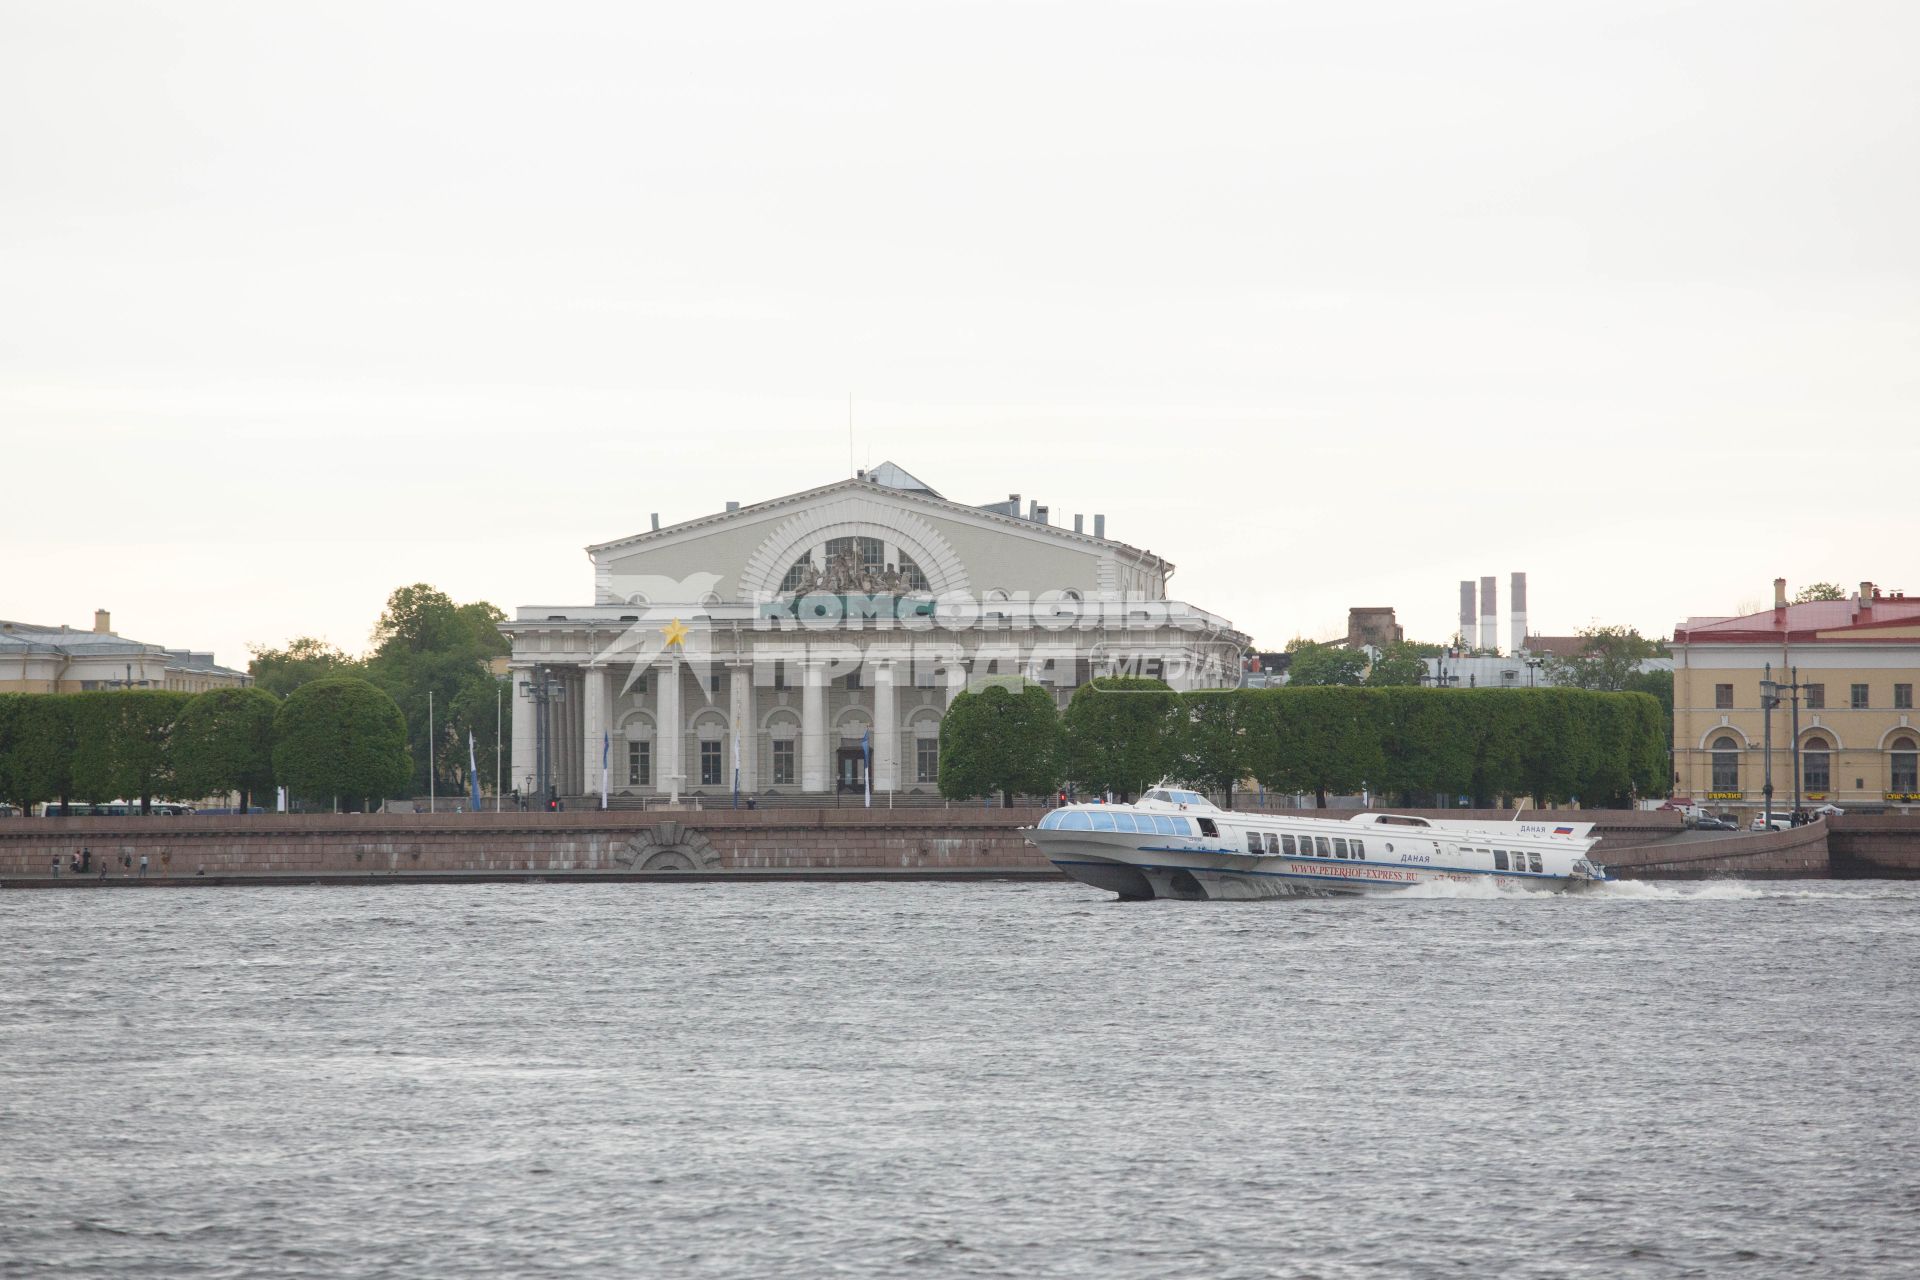 Санкт-Петербург. Вид на здание Биржи на Стрелке Васильевского острова.